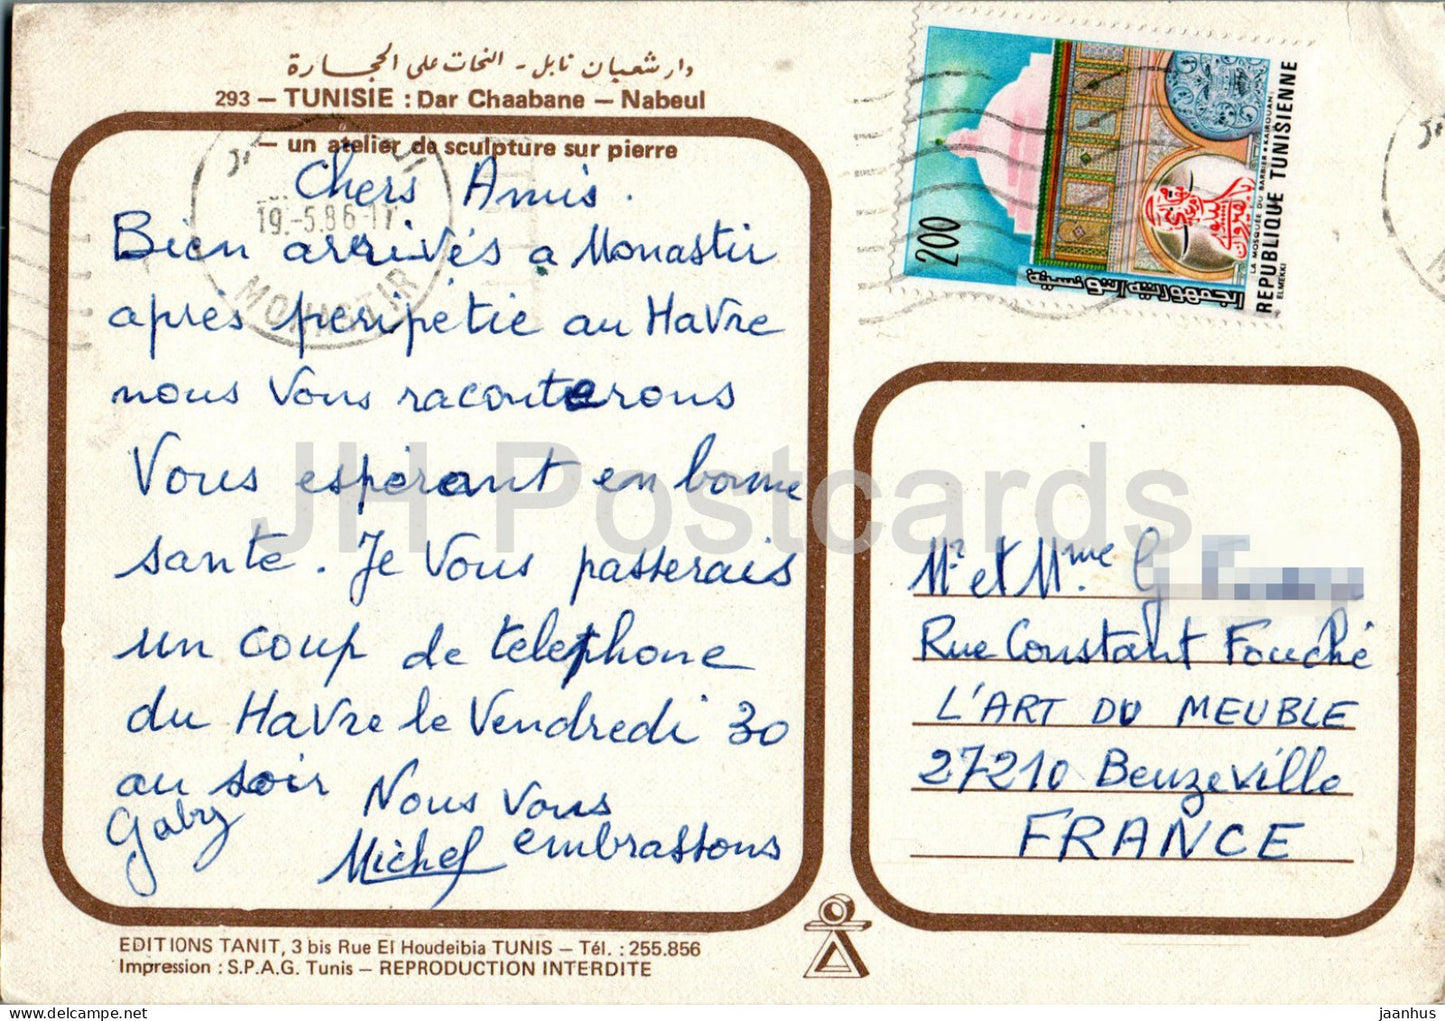 Nabeul - Dar Chaabane - Kunsthandwerk - Kunst - 293 - 1986 - Tunesien - gebraucht 